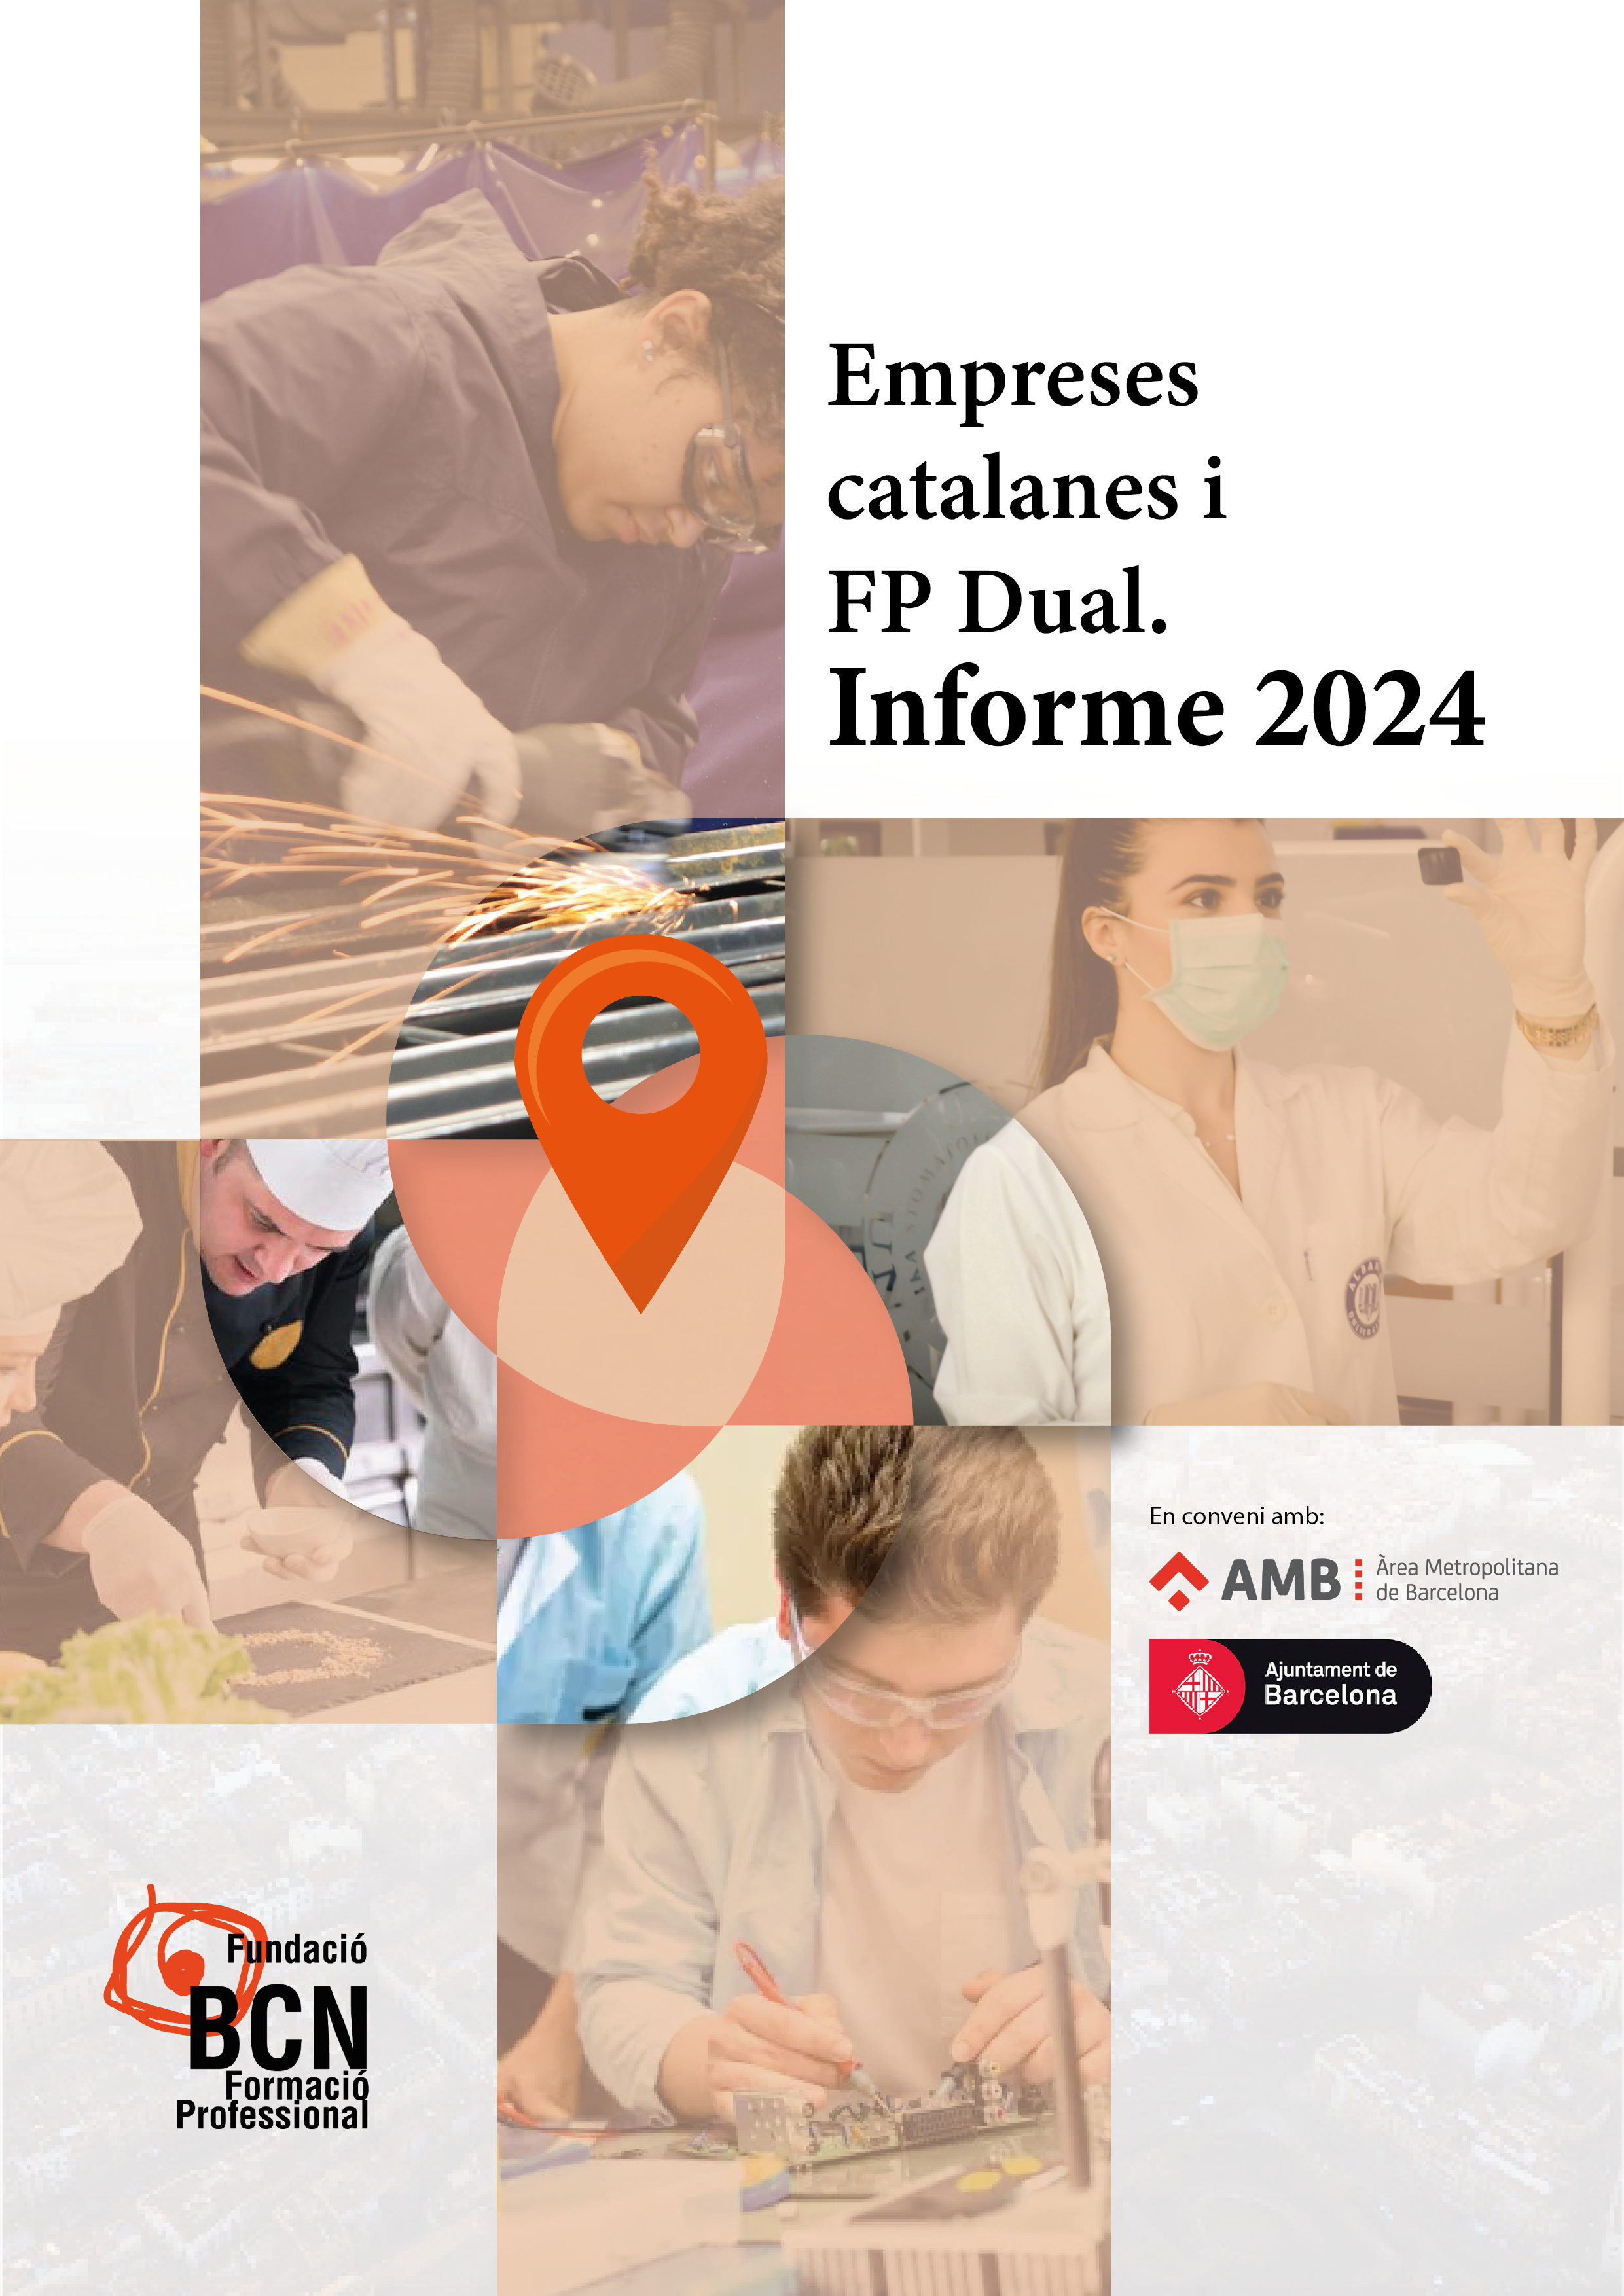 Empresas catalanas y FP dual. Informe 2024